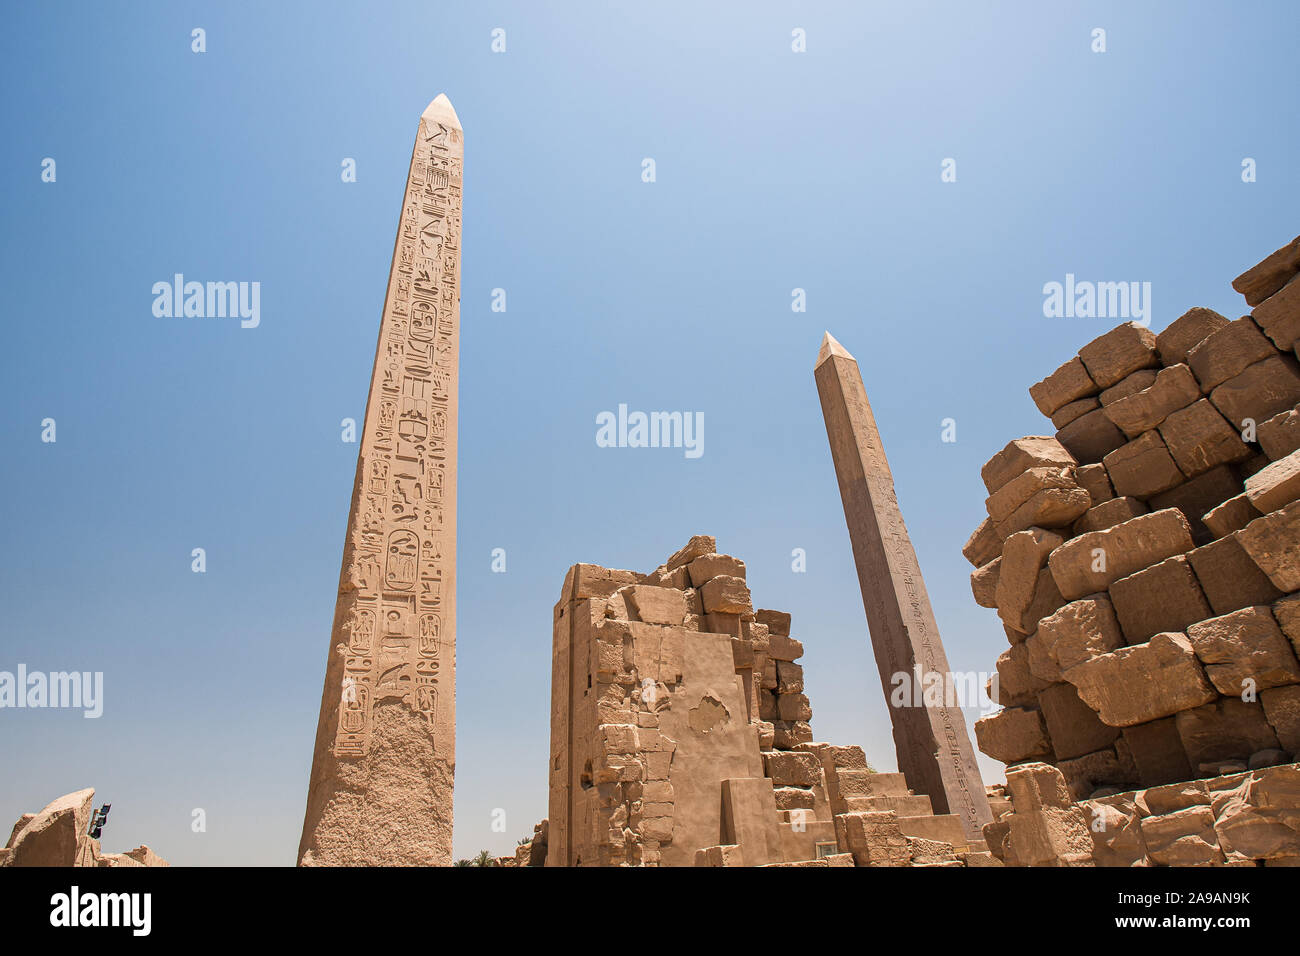 Karnak, Luxor, Egypt - April 28, 2008: The obelisks of Thutmose I and Queen Hatshepsut in Karnak temple near Luxor, Egypt. Stock Photo